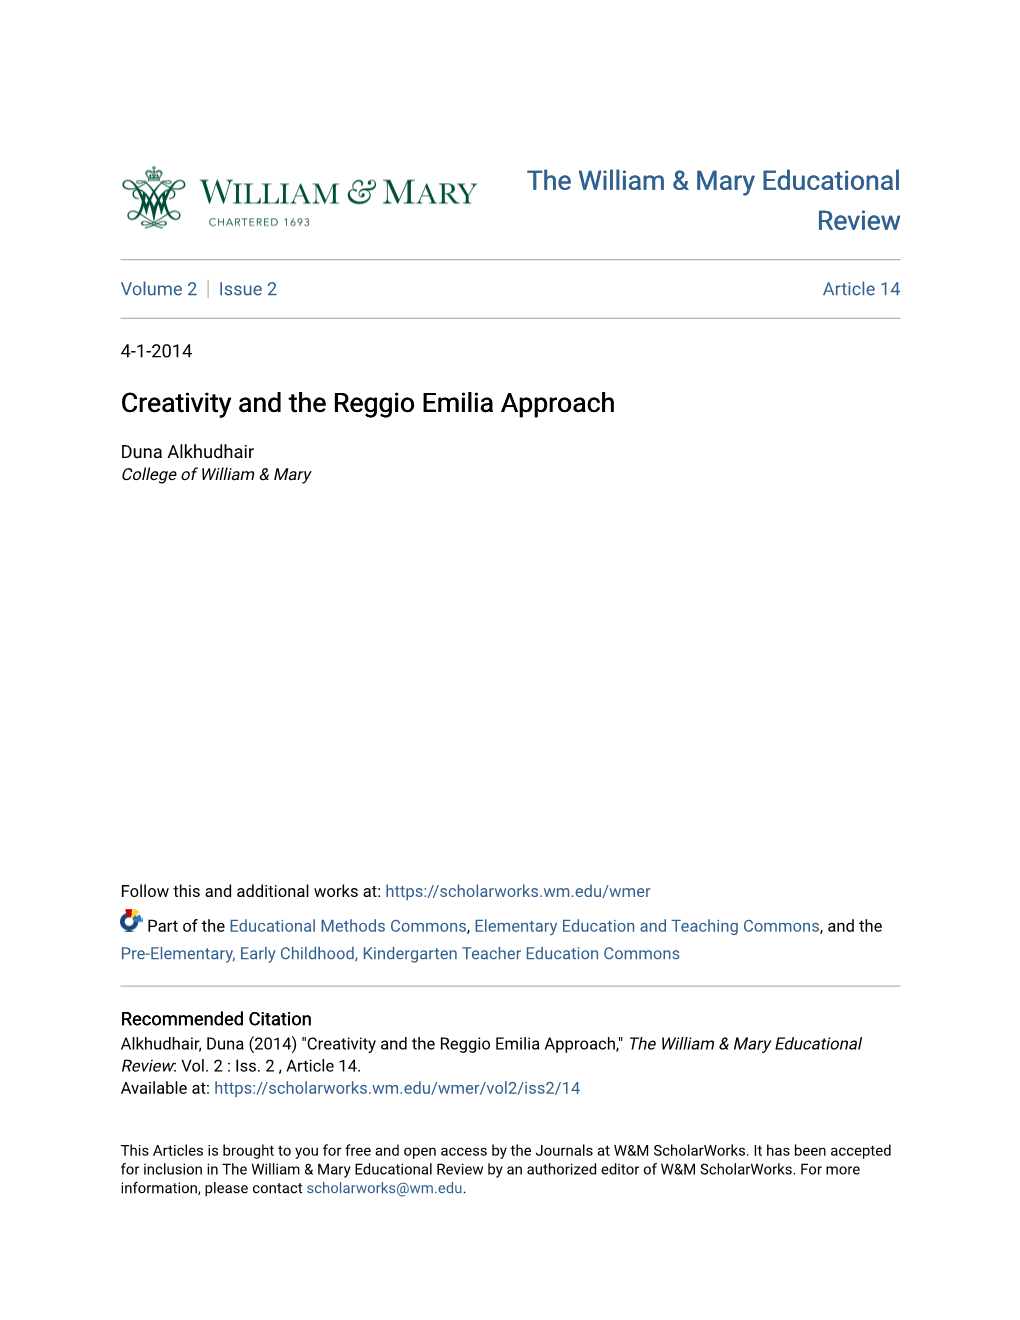 Creativity and the Reggio Emilia Approach